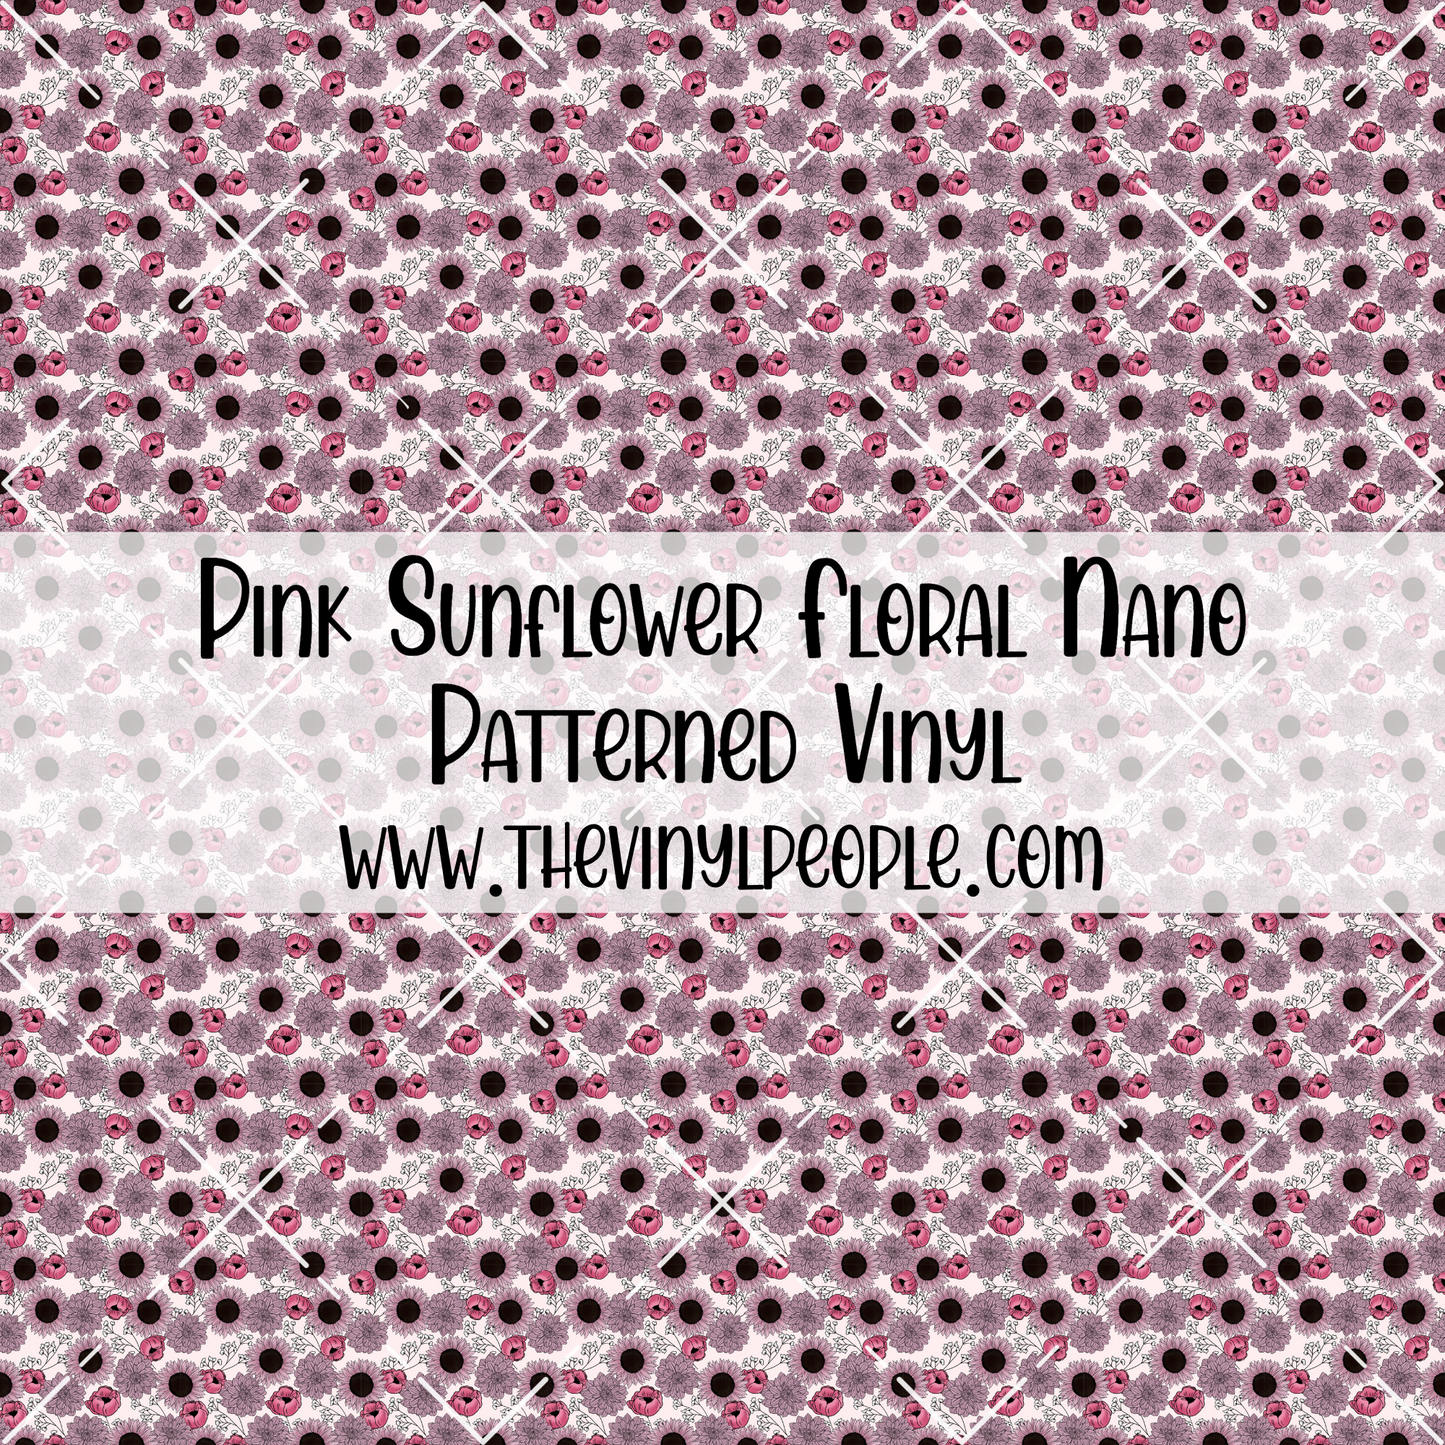 Pink Sunflower Floral Patterned Vinyl